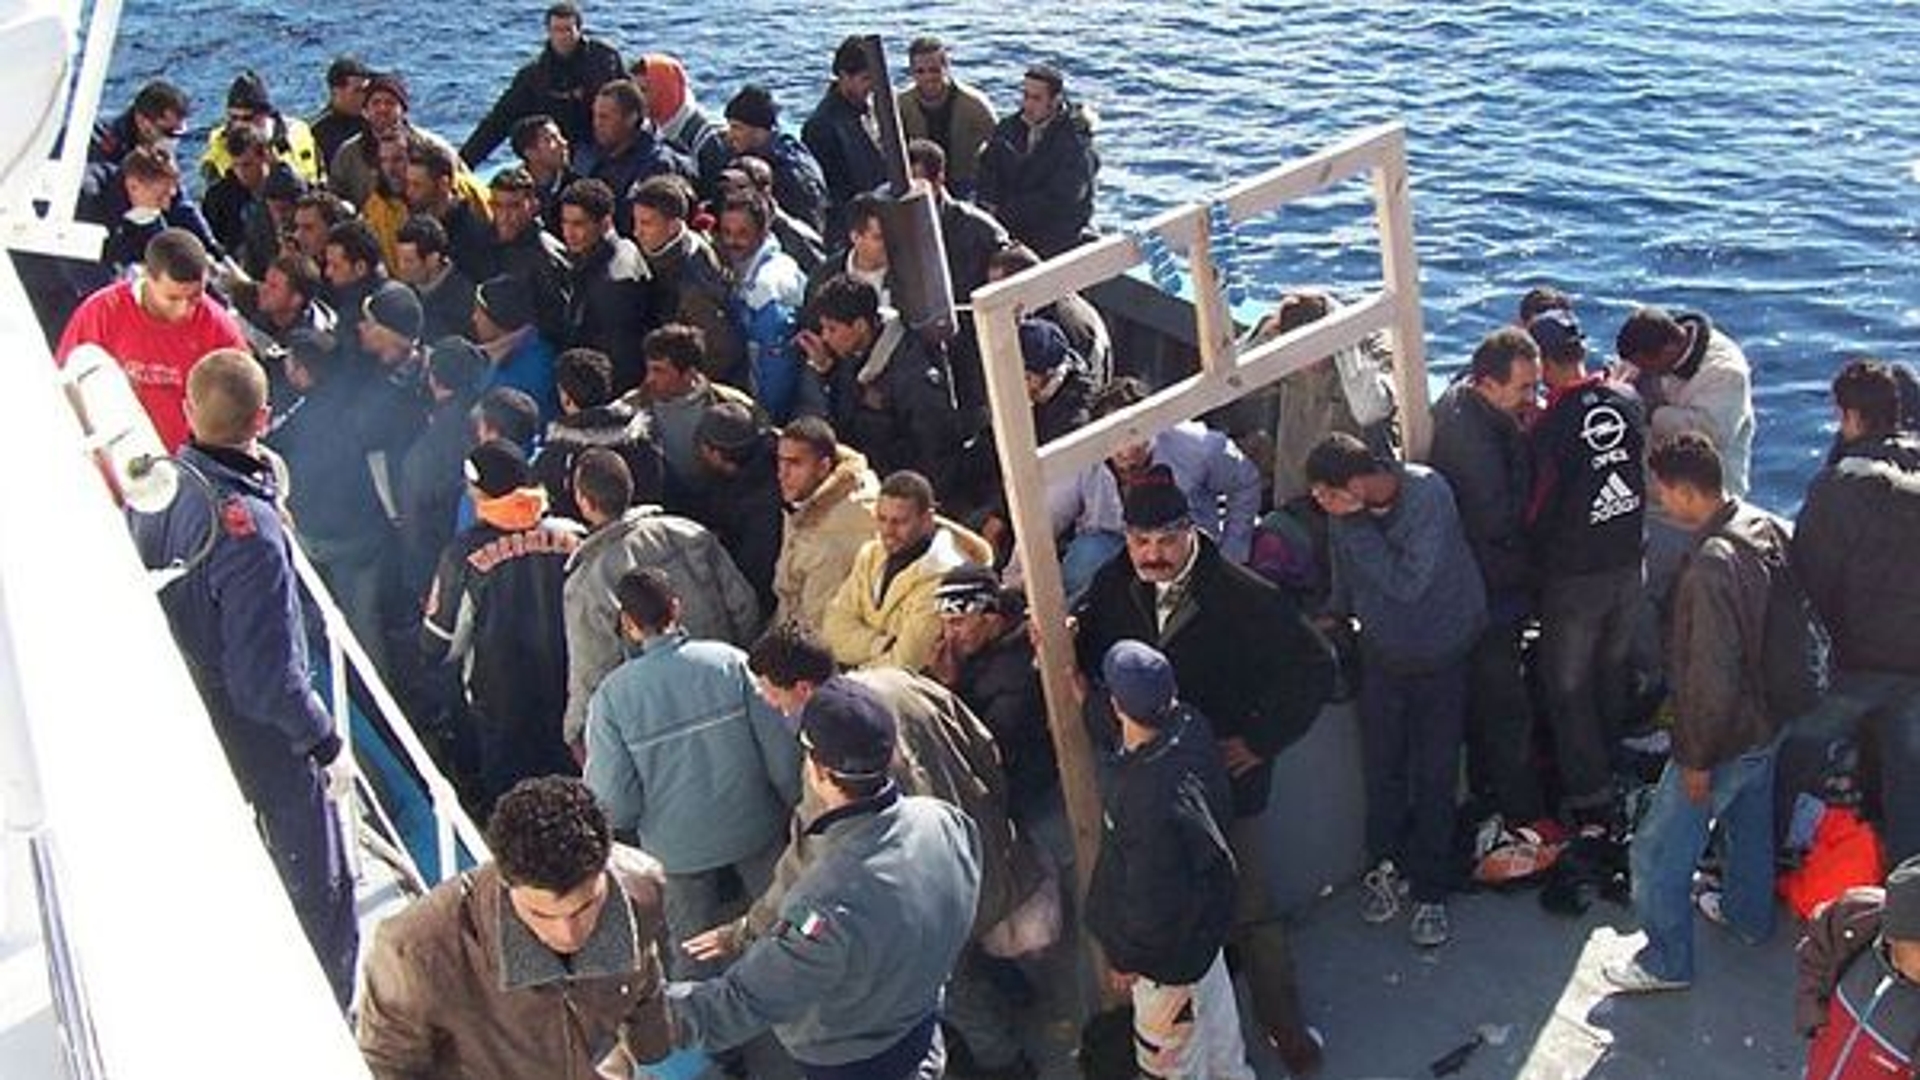 itali%c3%ab-redt-4000-bootvluchtelingen-in-2-dagen